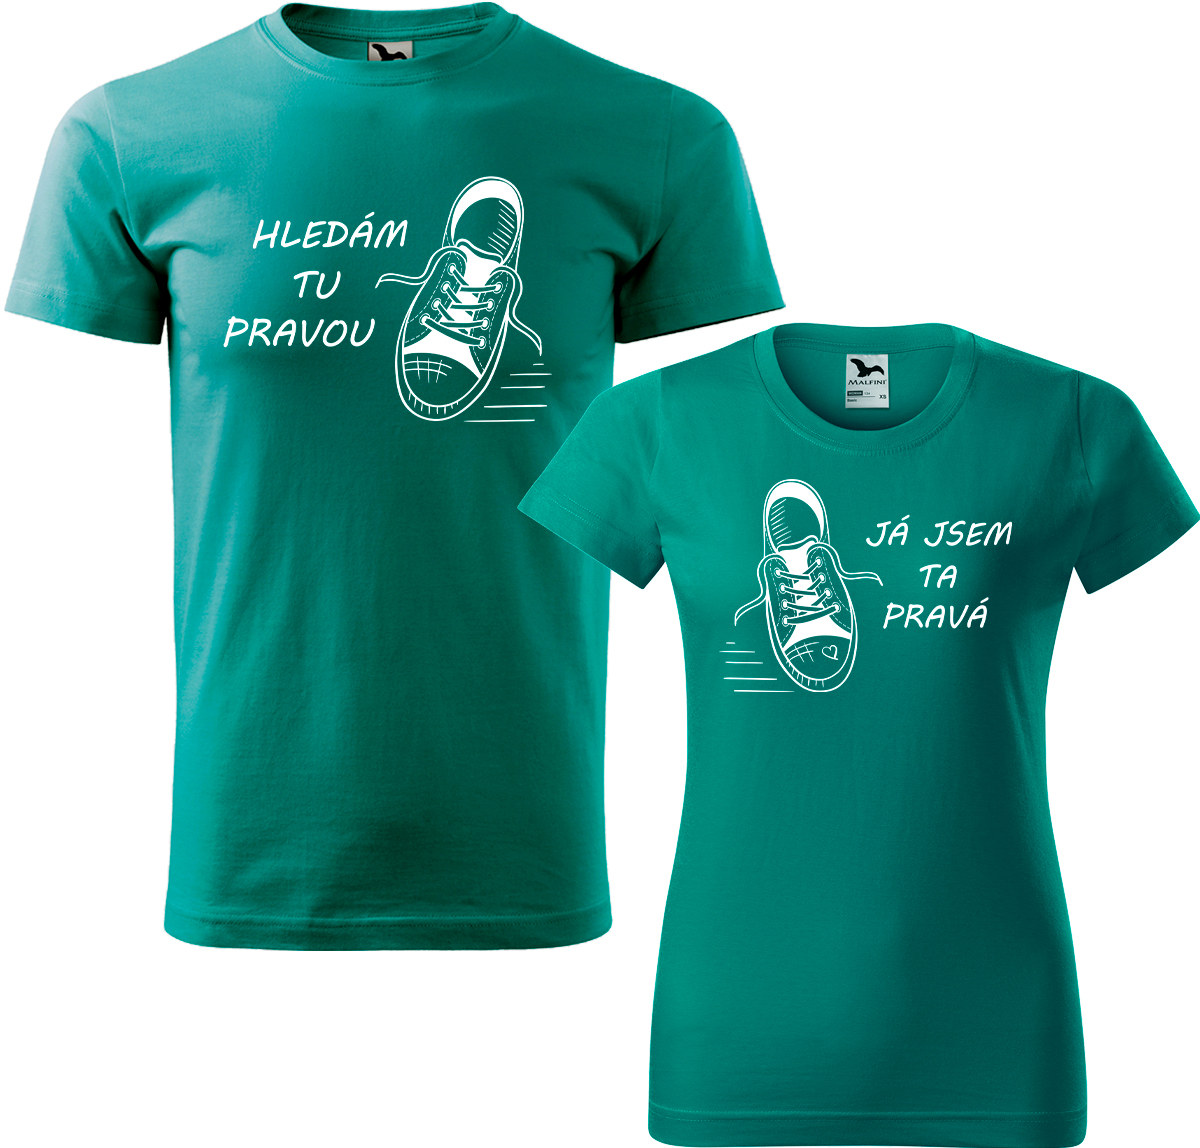 Trička pro páry - Kecky Barva: Emerald (19), Velikost dámské tričko: 3XL, Velikost pánské tričko: 3XL